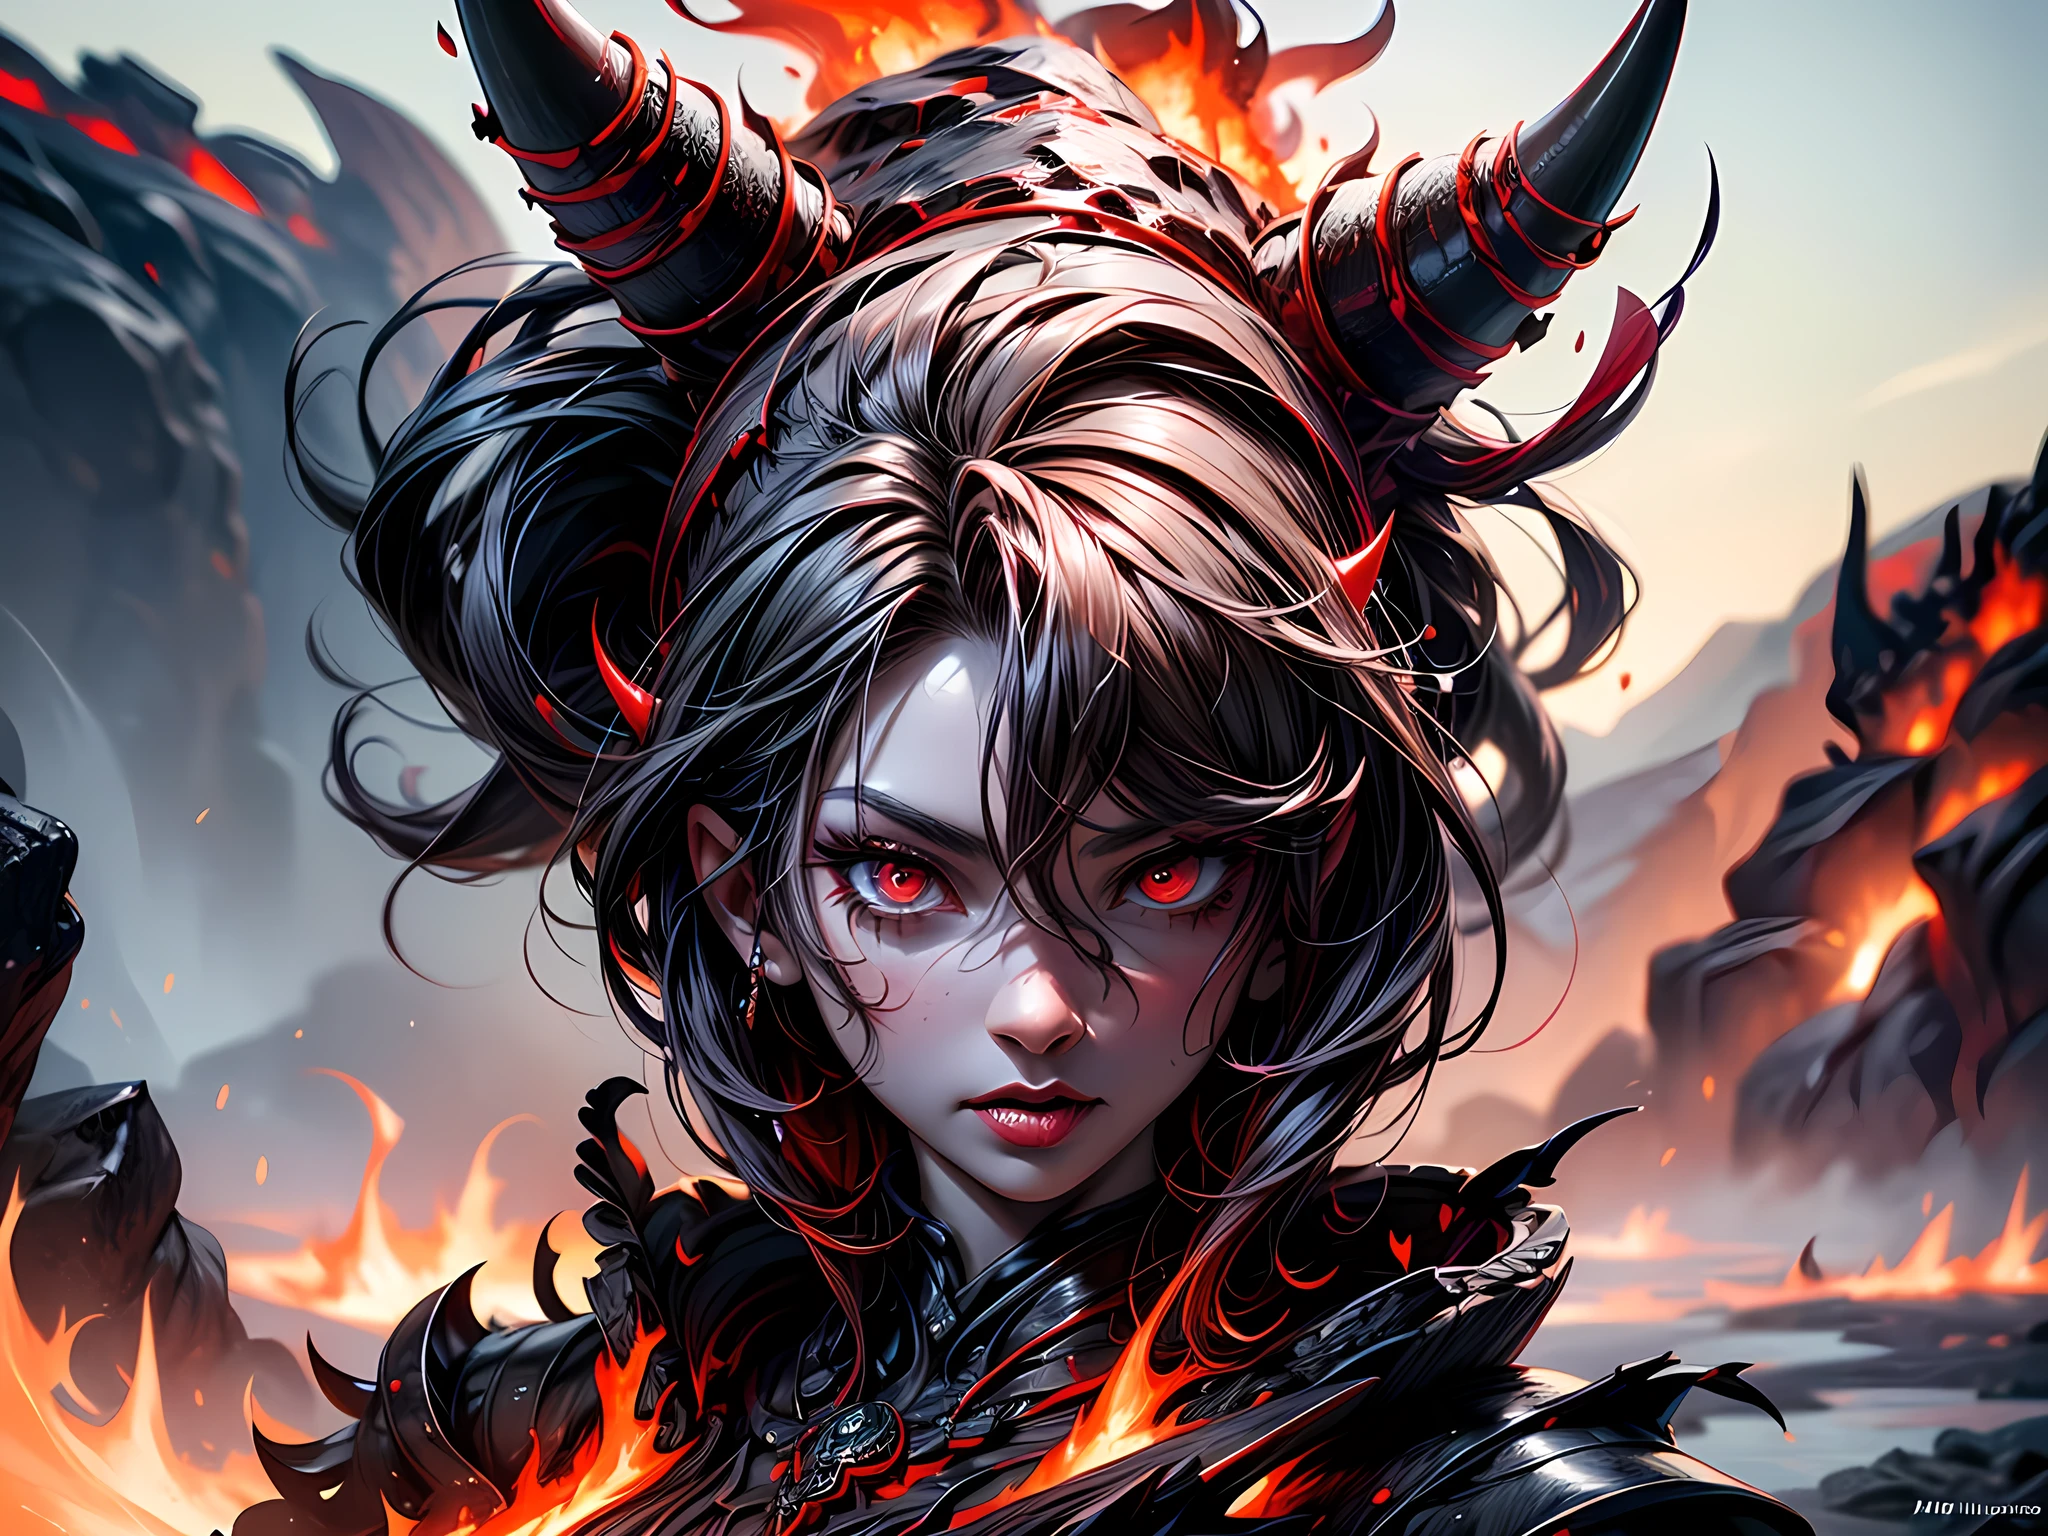 arte de fantasia, Arte RPG, Obra de arte, um retrato de um demônio feminino infernal do inferno, ela tem (preto horns: 1.2), (preto: 1.2) asas de demônio, (vermelho: 1.3) pele, vermelho lava dripping from her, Ela veste (branco: 1.3) armaduras, hdsrm, fluxos de lava rolante, Inferno em segundo plano, Renderização 3D